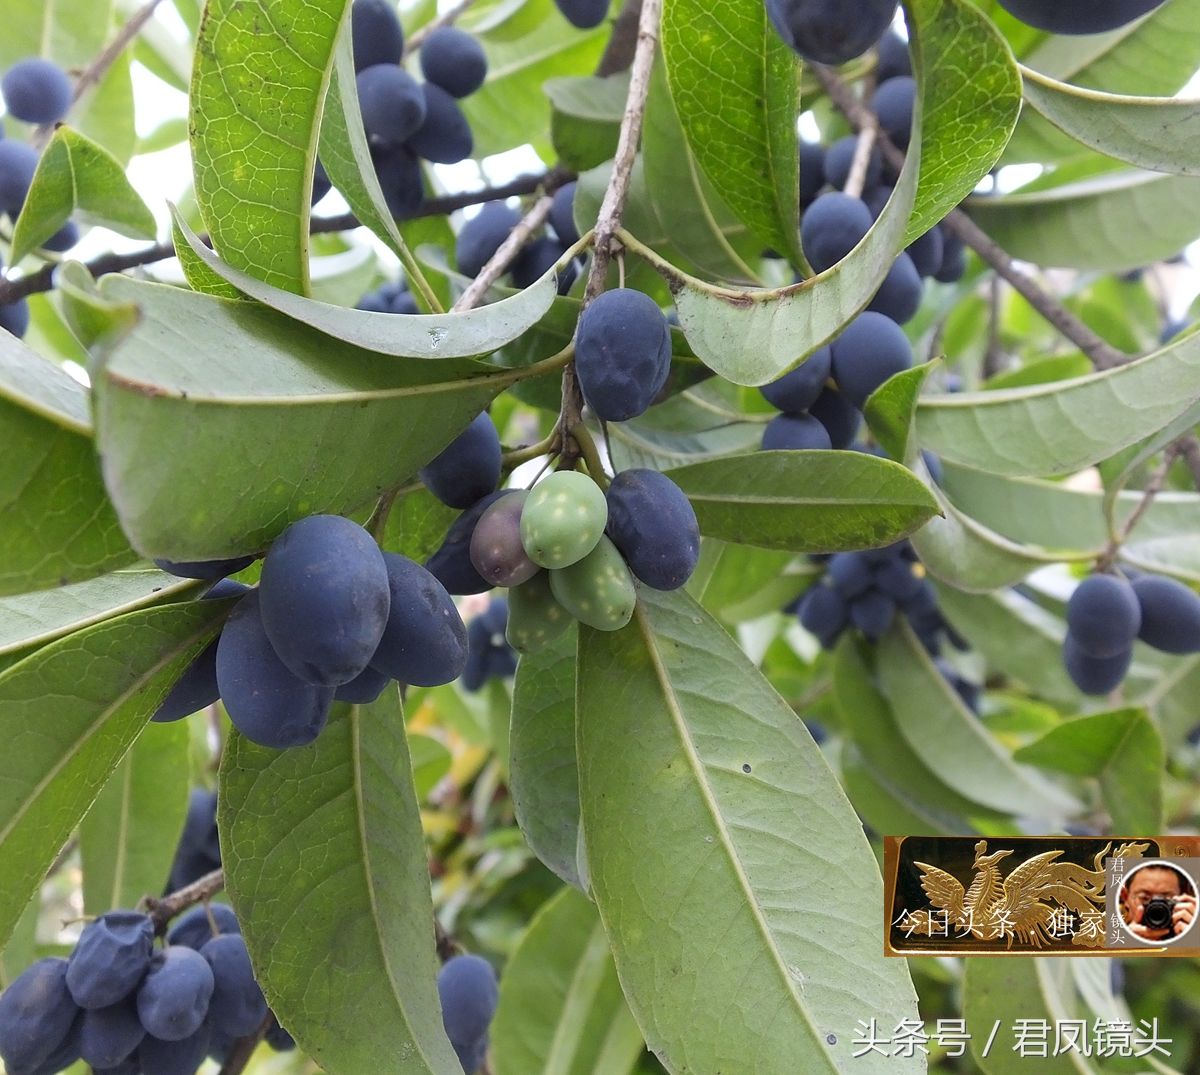 湖北宜昌:桂花树果实成熟,酷似紫蓝色宝石!果实可以食用吗?